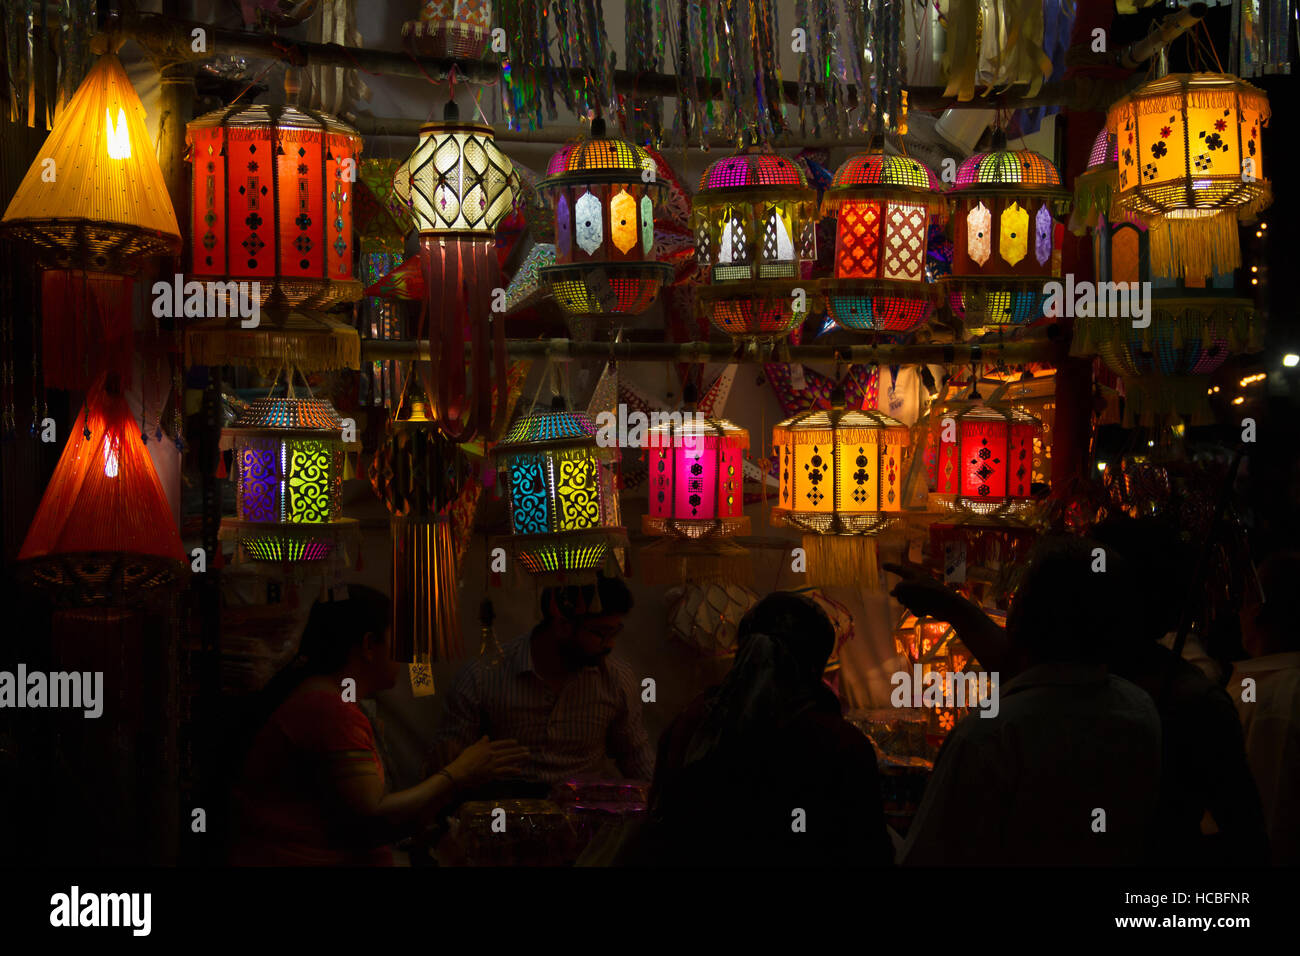 Bunte Laternen oder ein himmelslaternen (akash kandil) für Verkauf bei Nacht, Diwali Festival, Pune, Maharashtra, Indien Stockfoto